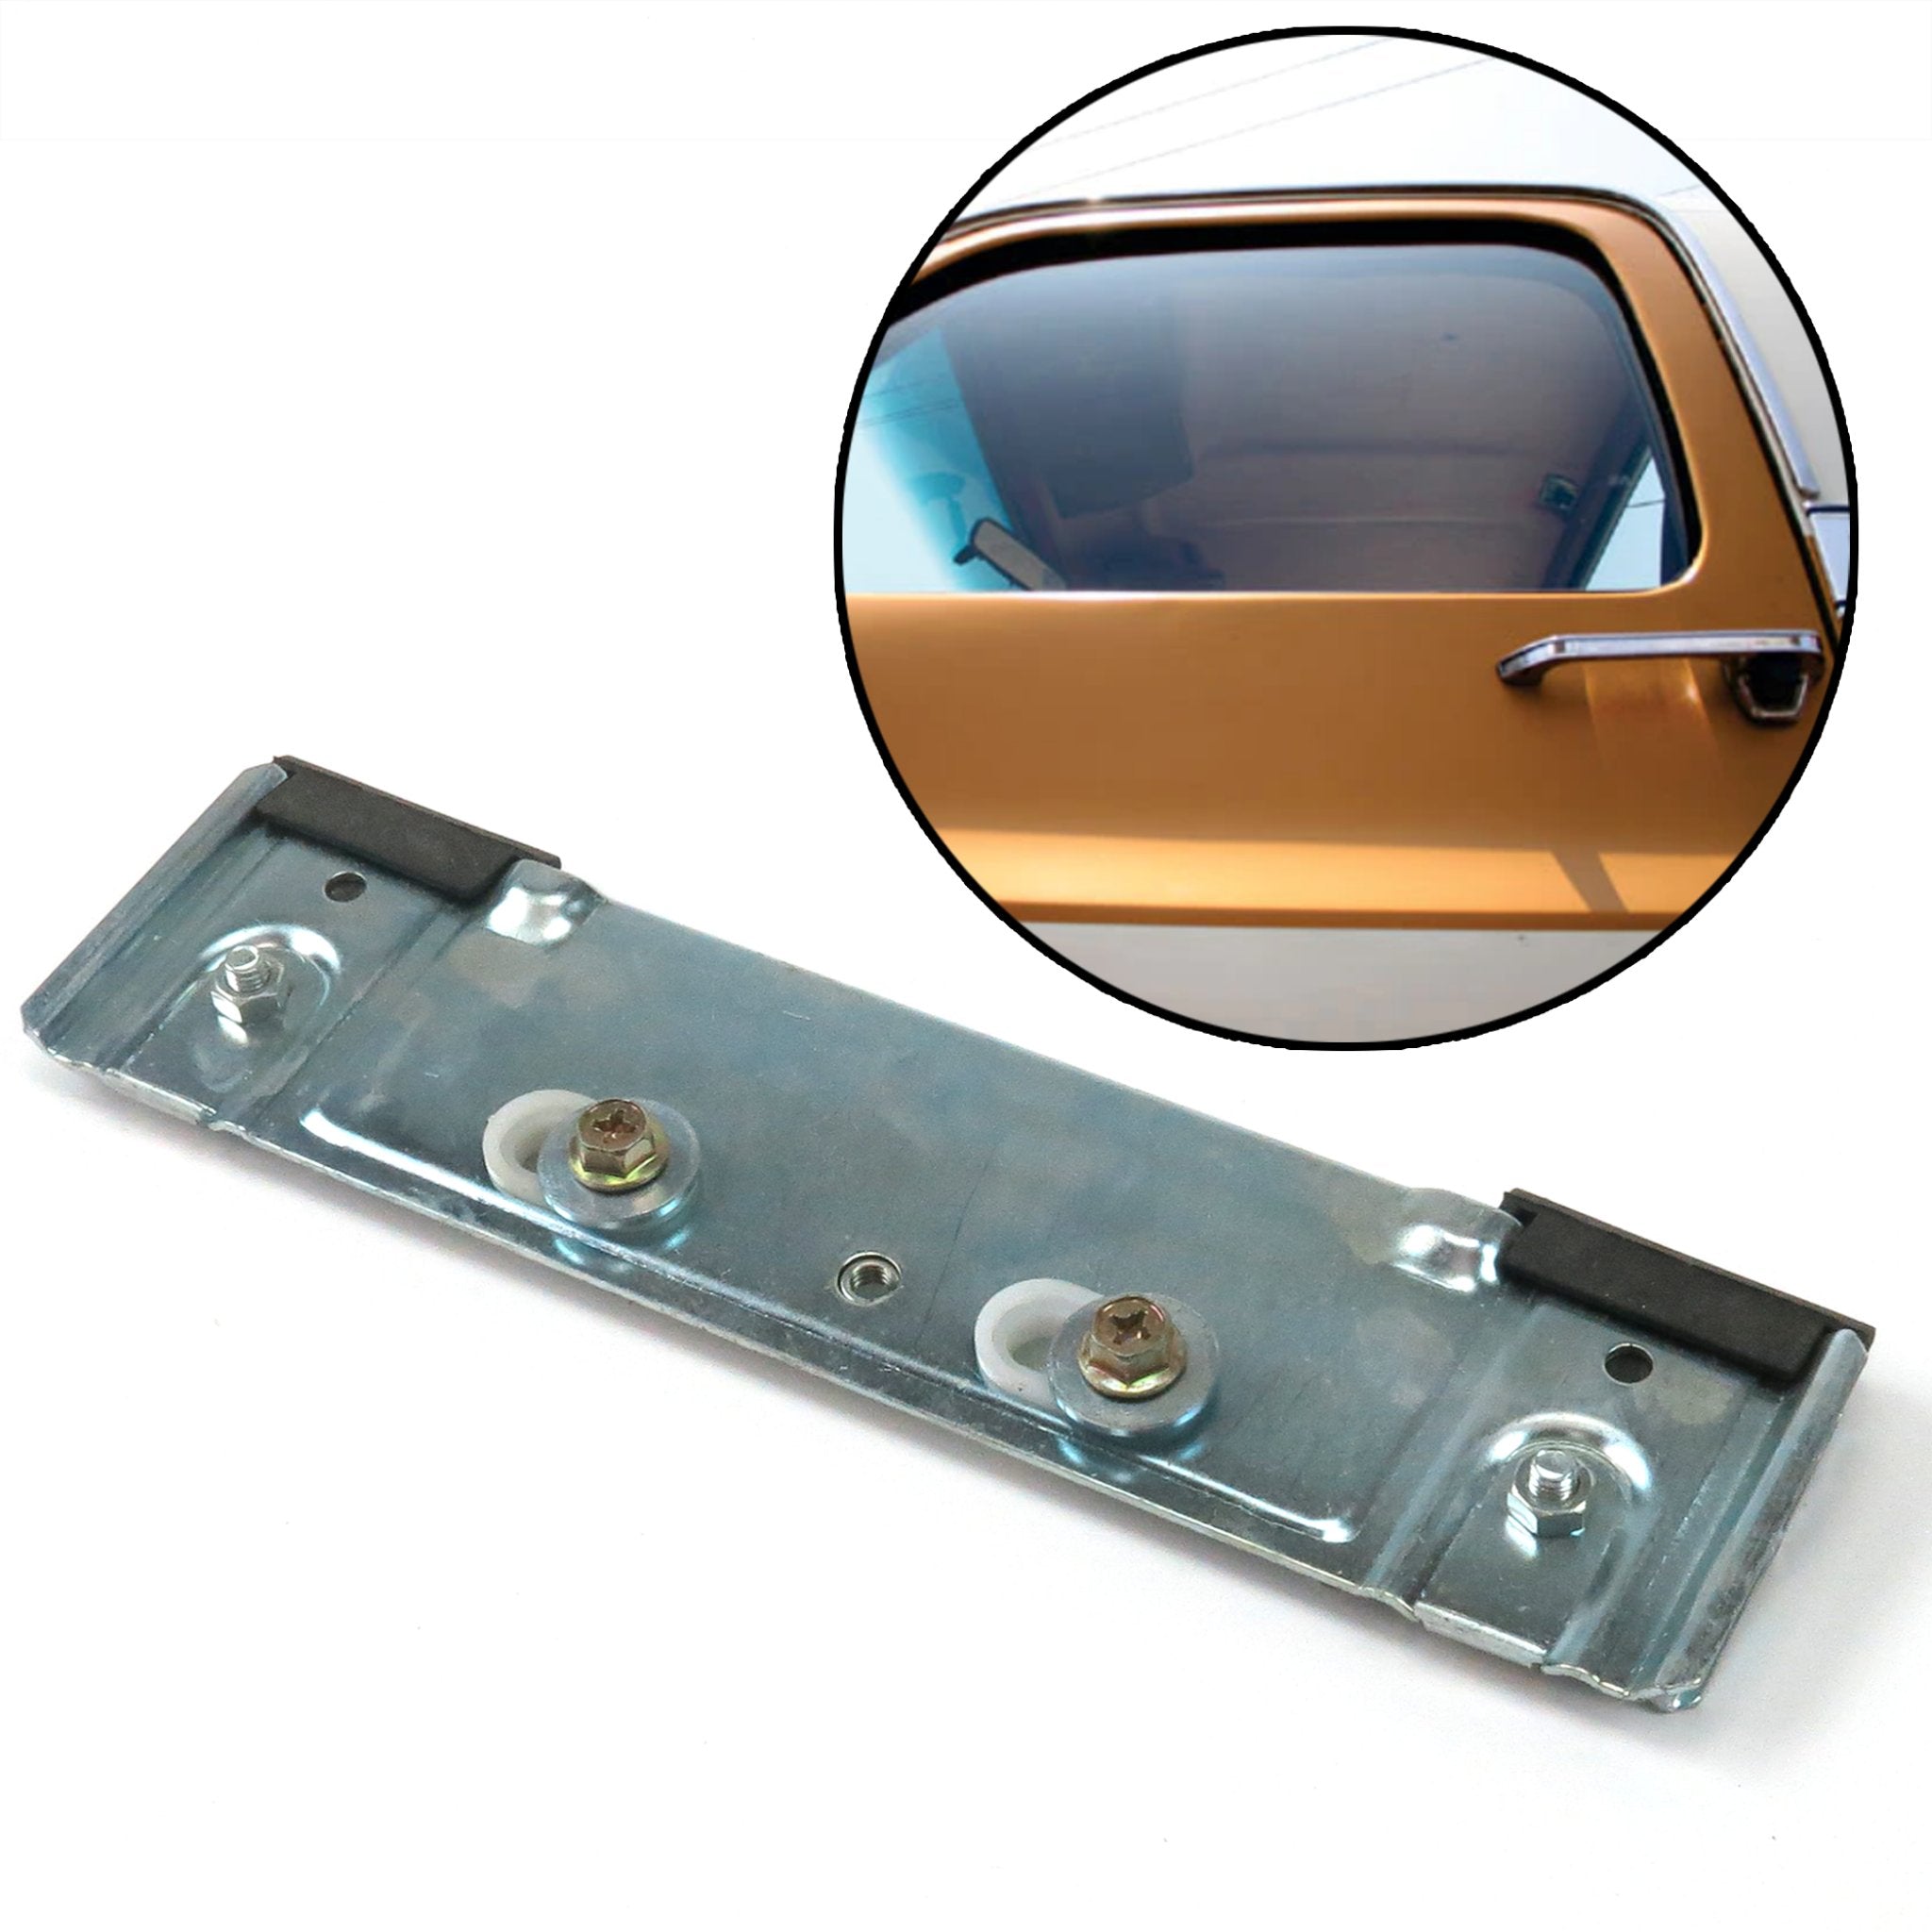 Abrazadera de regulador de ventana de repuesto para kits de energía eléctrica de vidrio plano PW5500